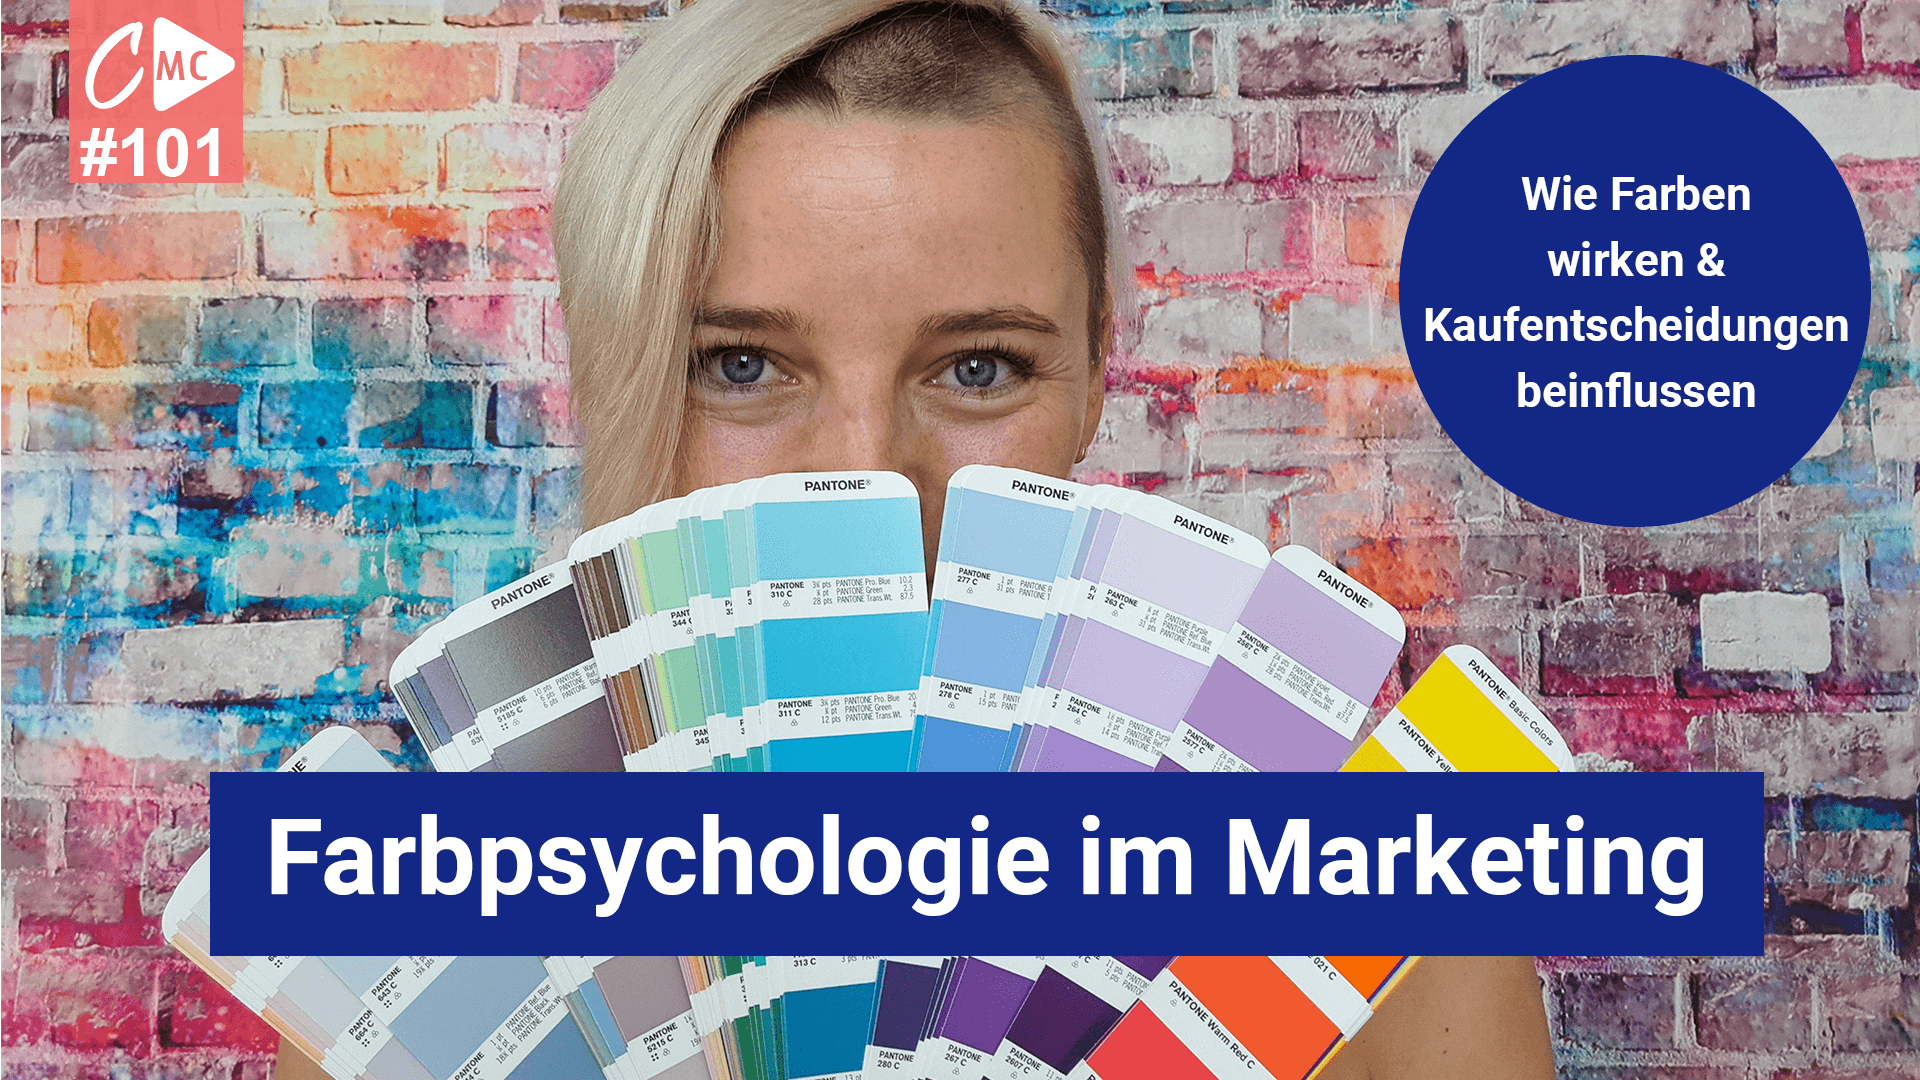 Farbpsychologie, die Wirkung von Farben auf unser Kaufverhalten, Emotionen und Marken